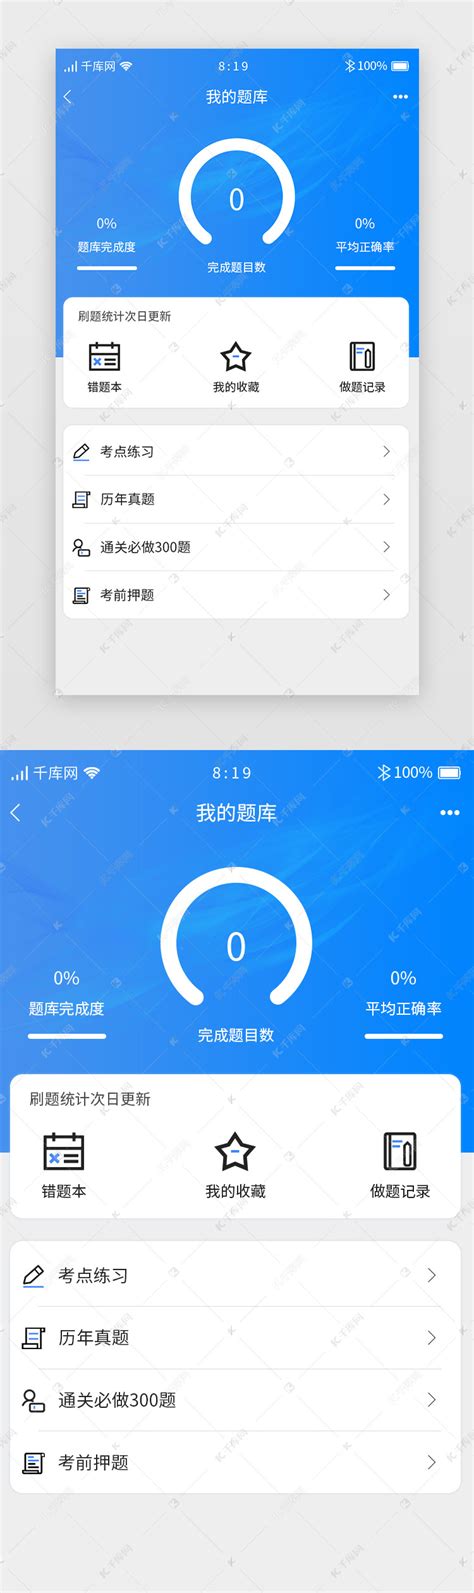 题库APP UI设计案例欣赏-上海艾艺